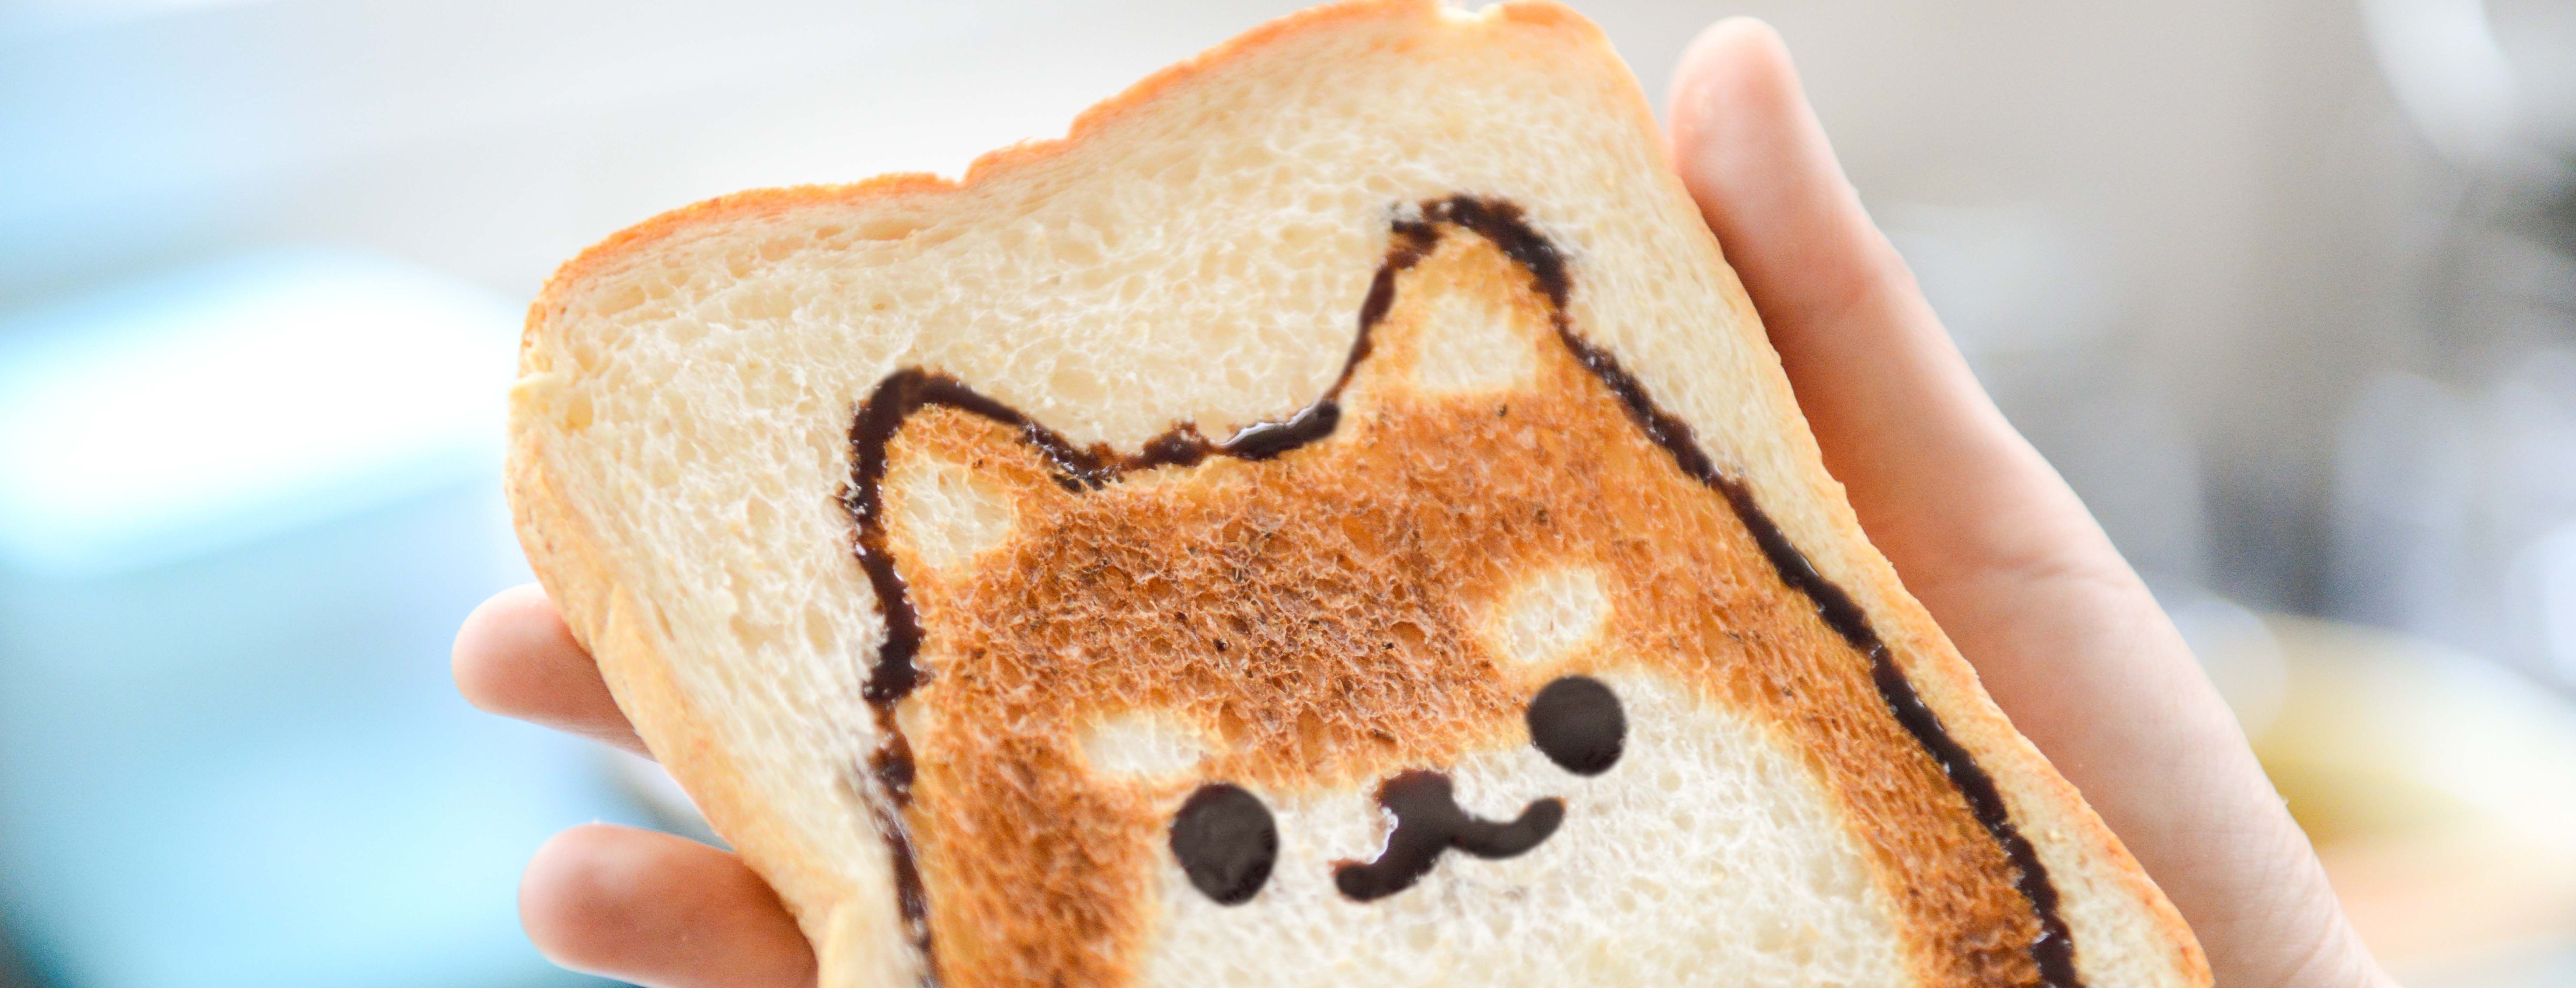 Дослідники виявили неочікувану шкоду від звичайного підсмаженого тоста